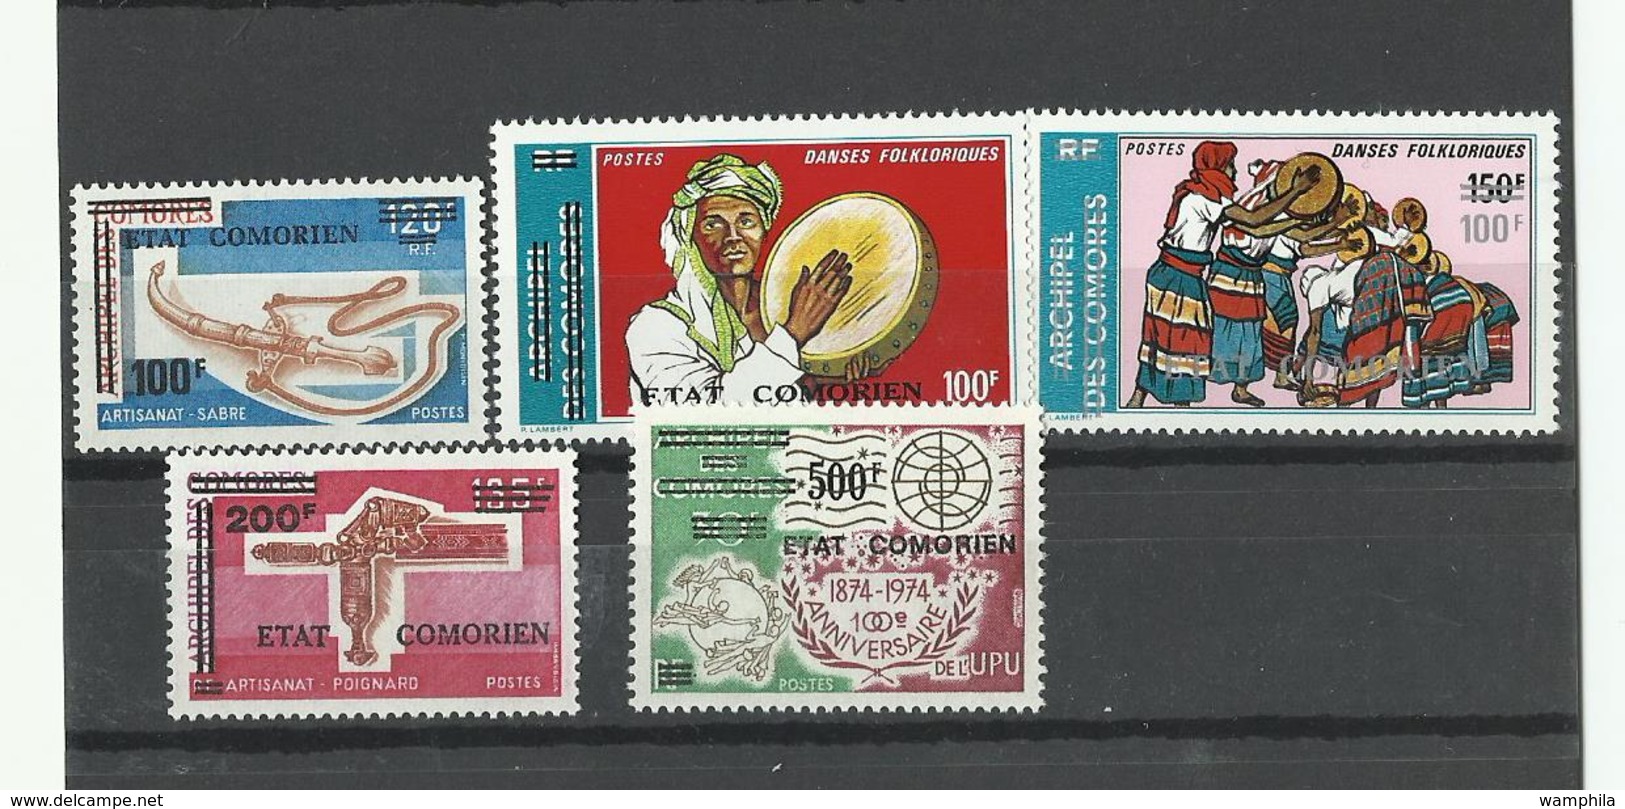 Comores, séries de timbres ** voir description & scanns, cote YT 144€